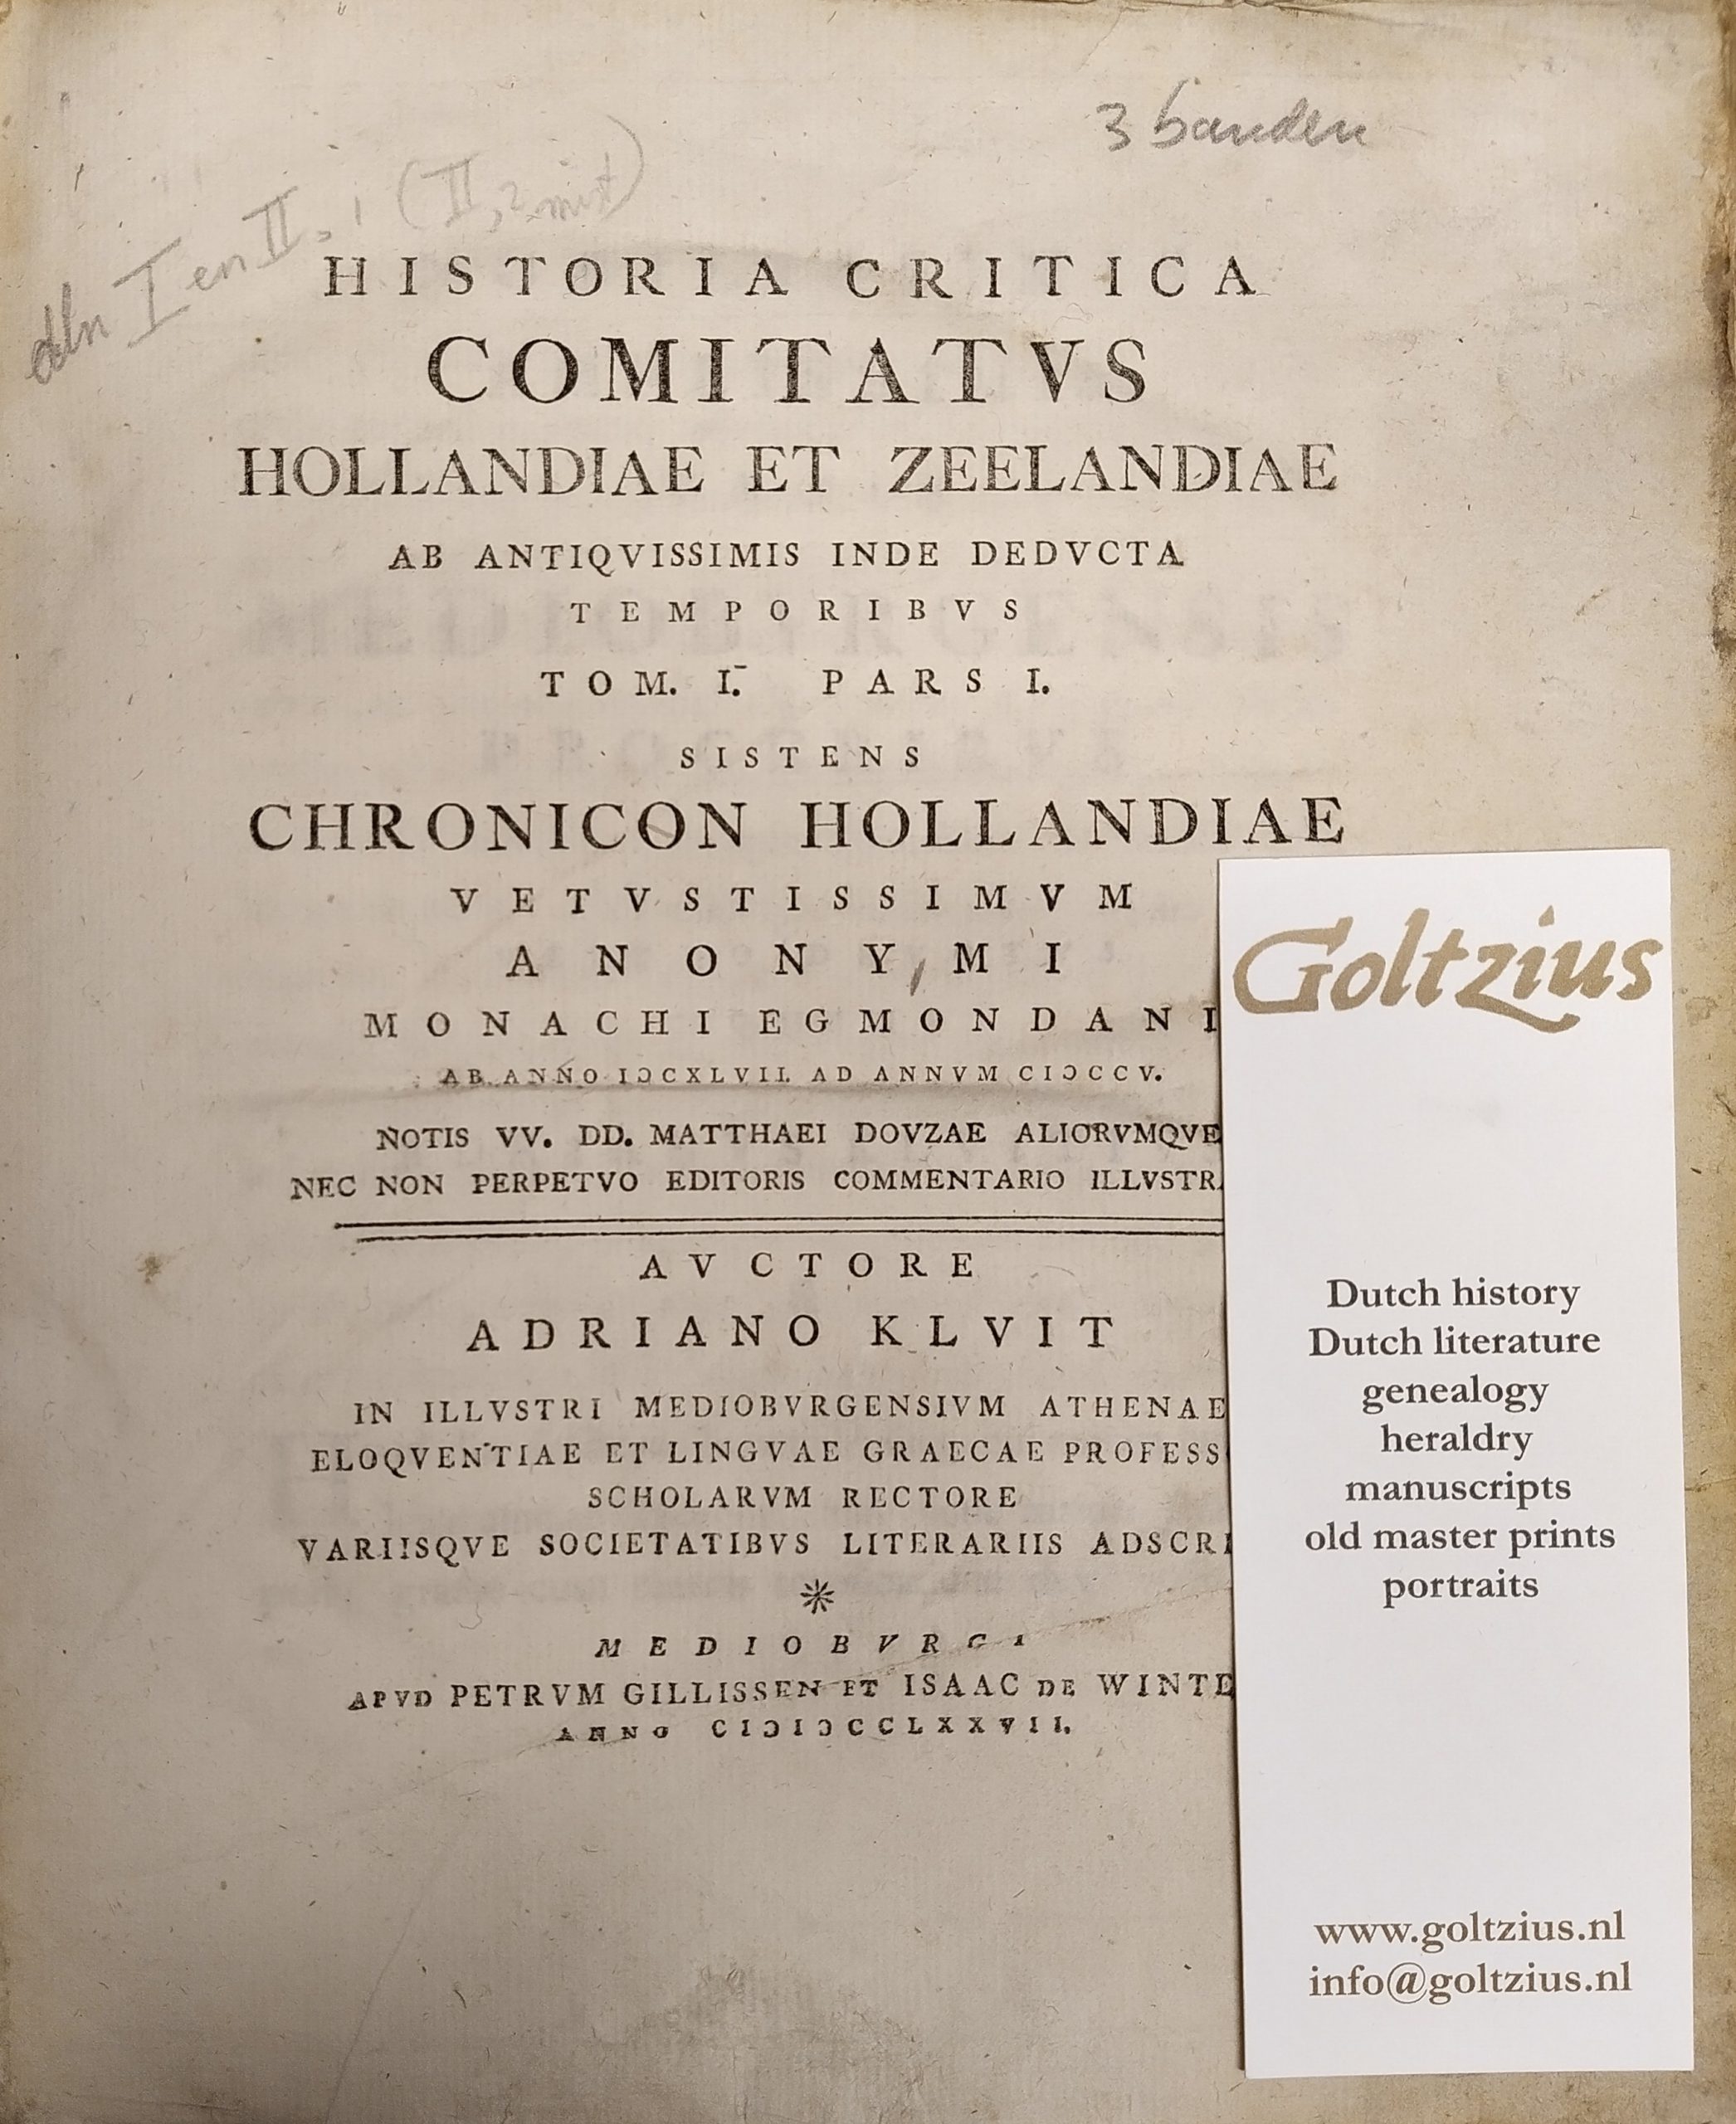 Kluit, Adr.  Historia critica comitatus Hollandiae et Zeelandiae ab antiquissimis inde deducta temporibus